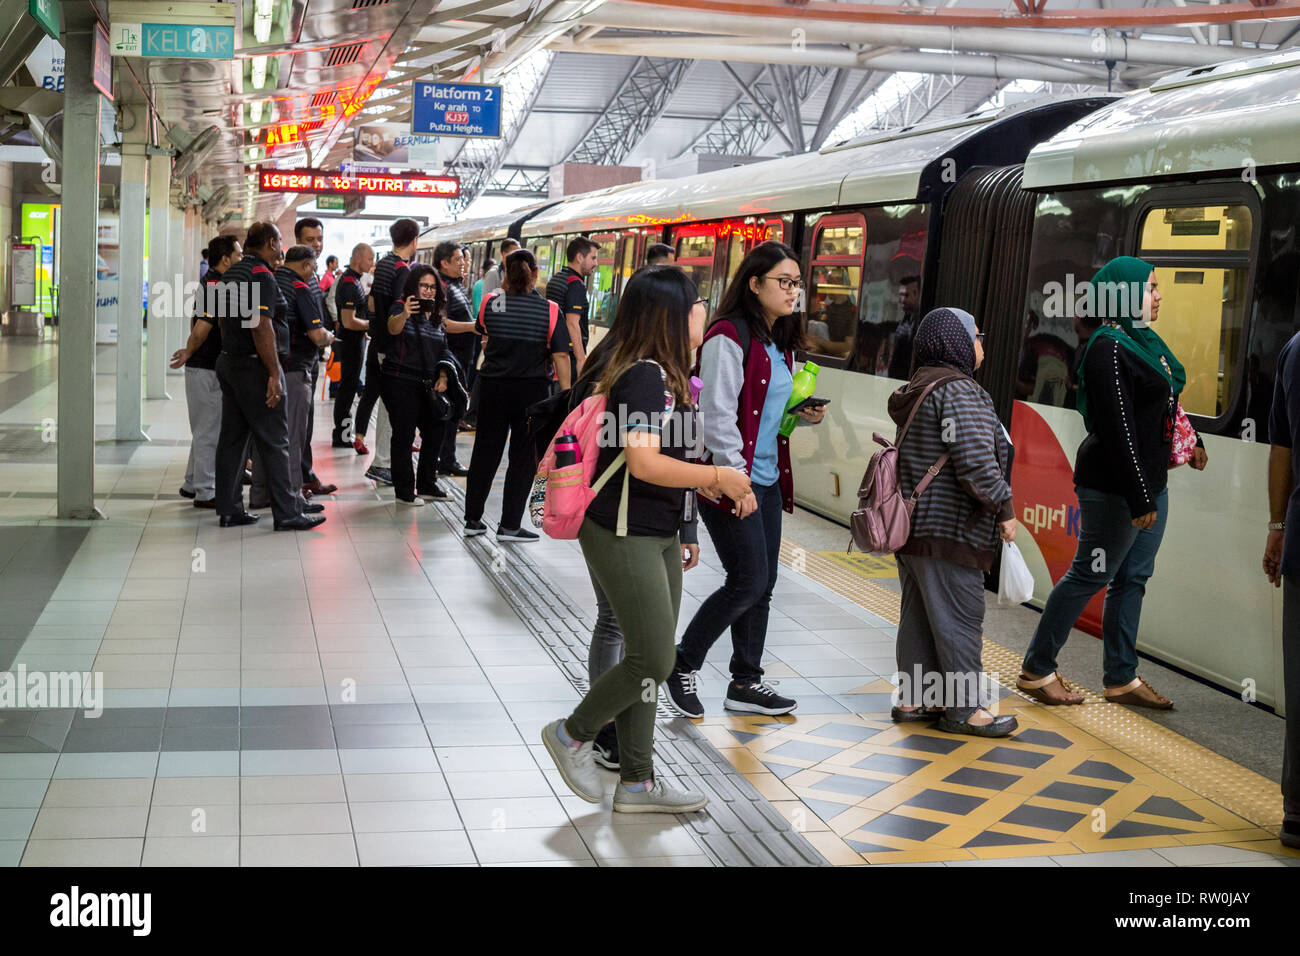 Passagiere an Bord LRT (Light Rail Transit) Zug am KL Sentral Station, Kuala Lumpur, Malaysia. Stockfoto